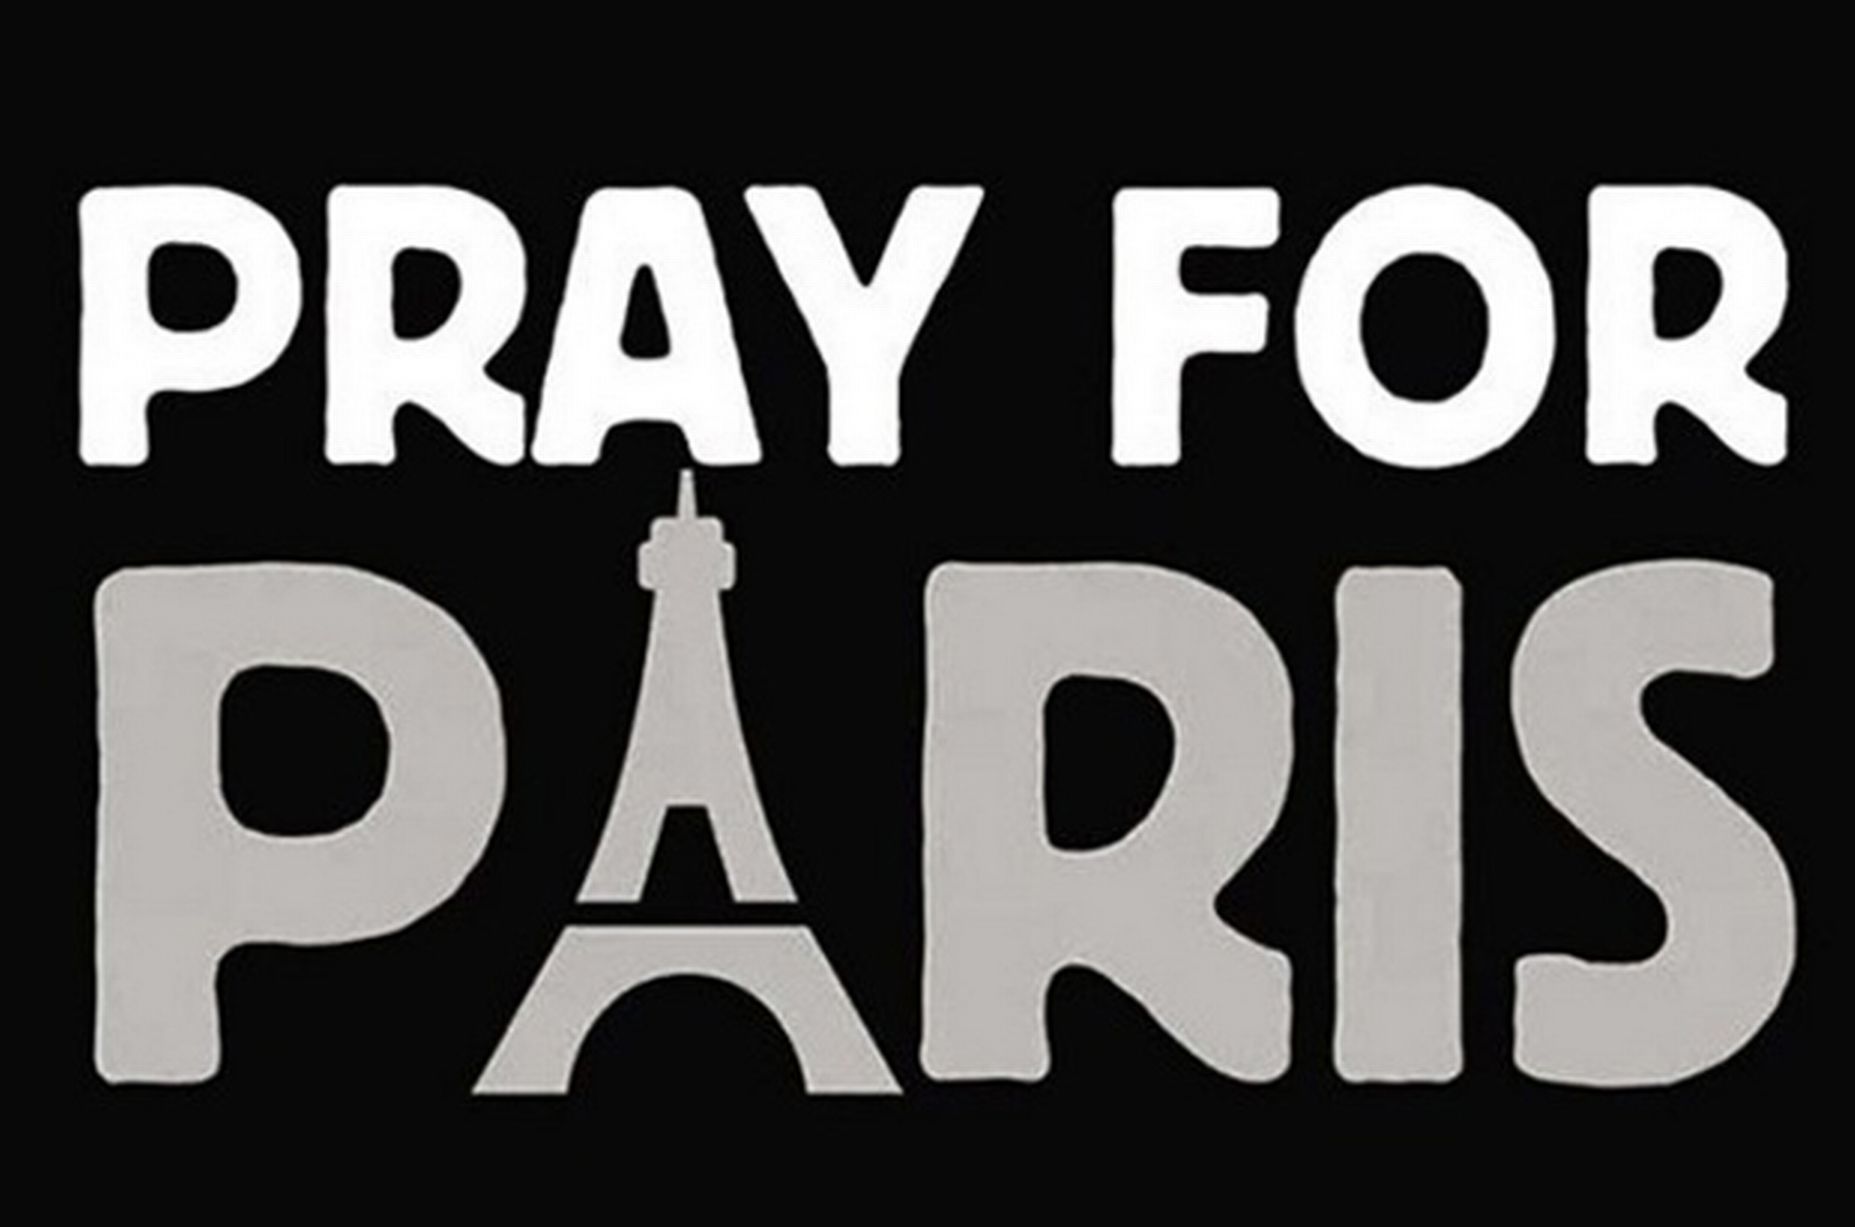 Pray-for-Paris